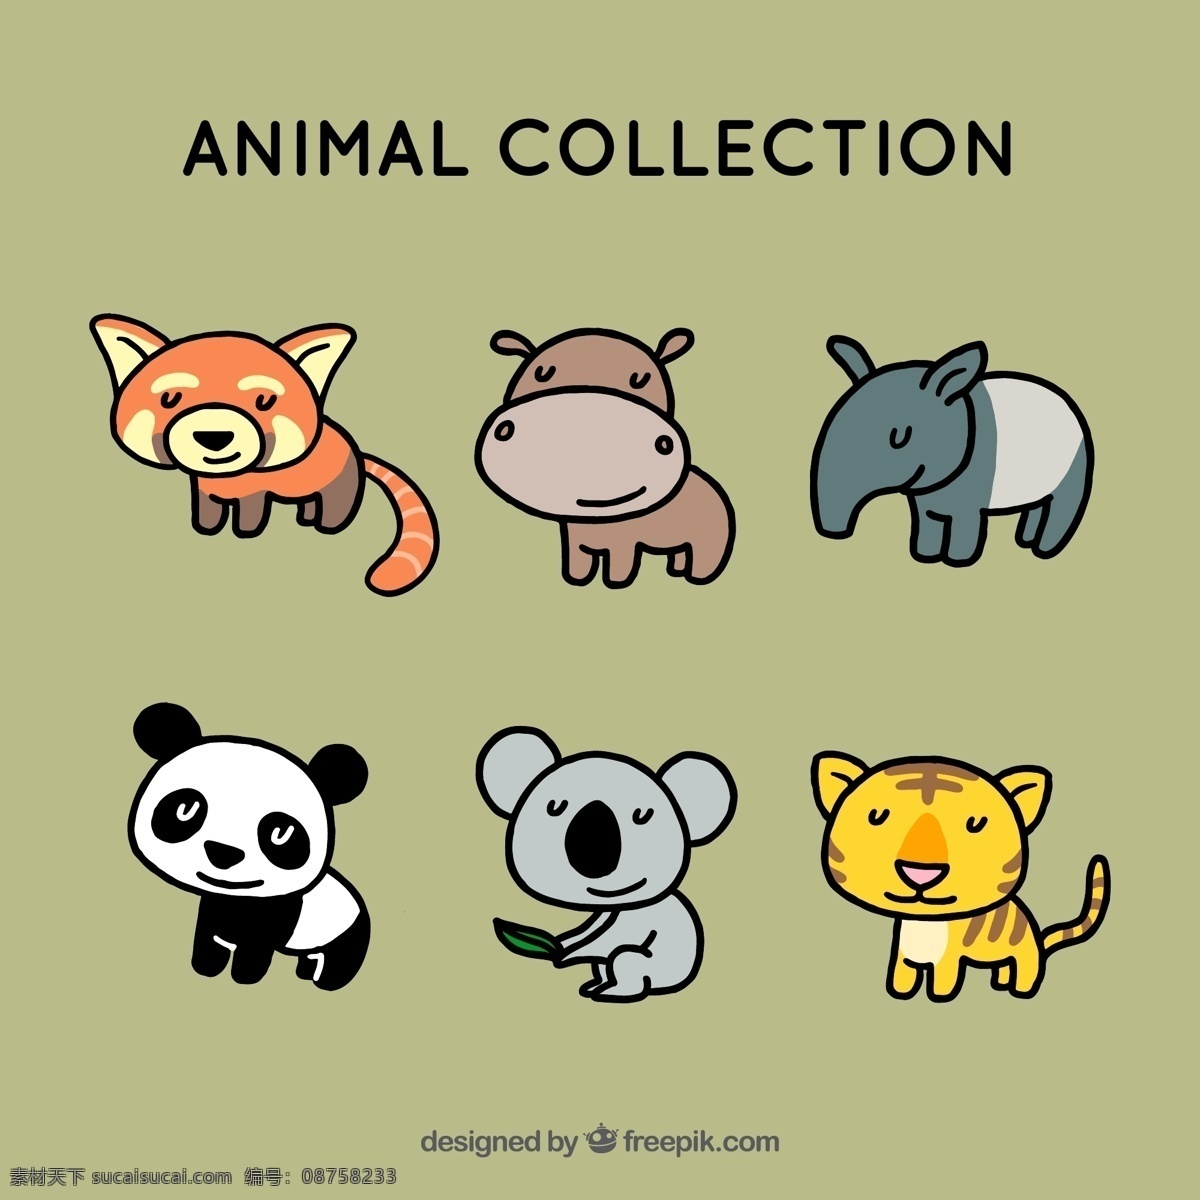 组 简约 可爱 小 动物 卡通 卡哇伊 矢量素材 小动物 创意设计 创意 元素 生物元素 动物元素